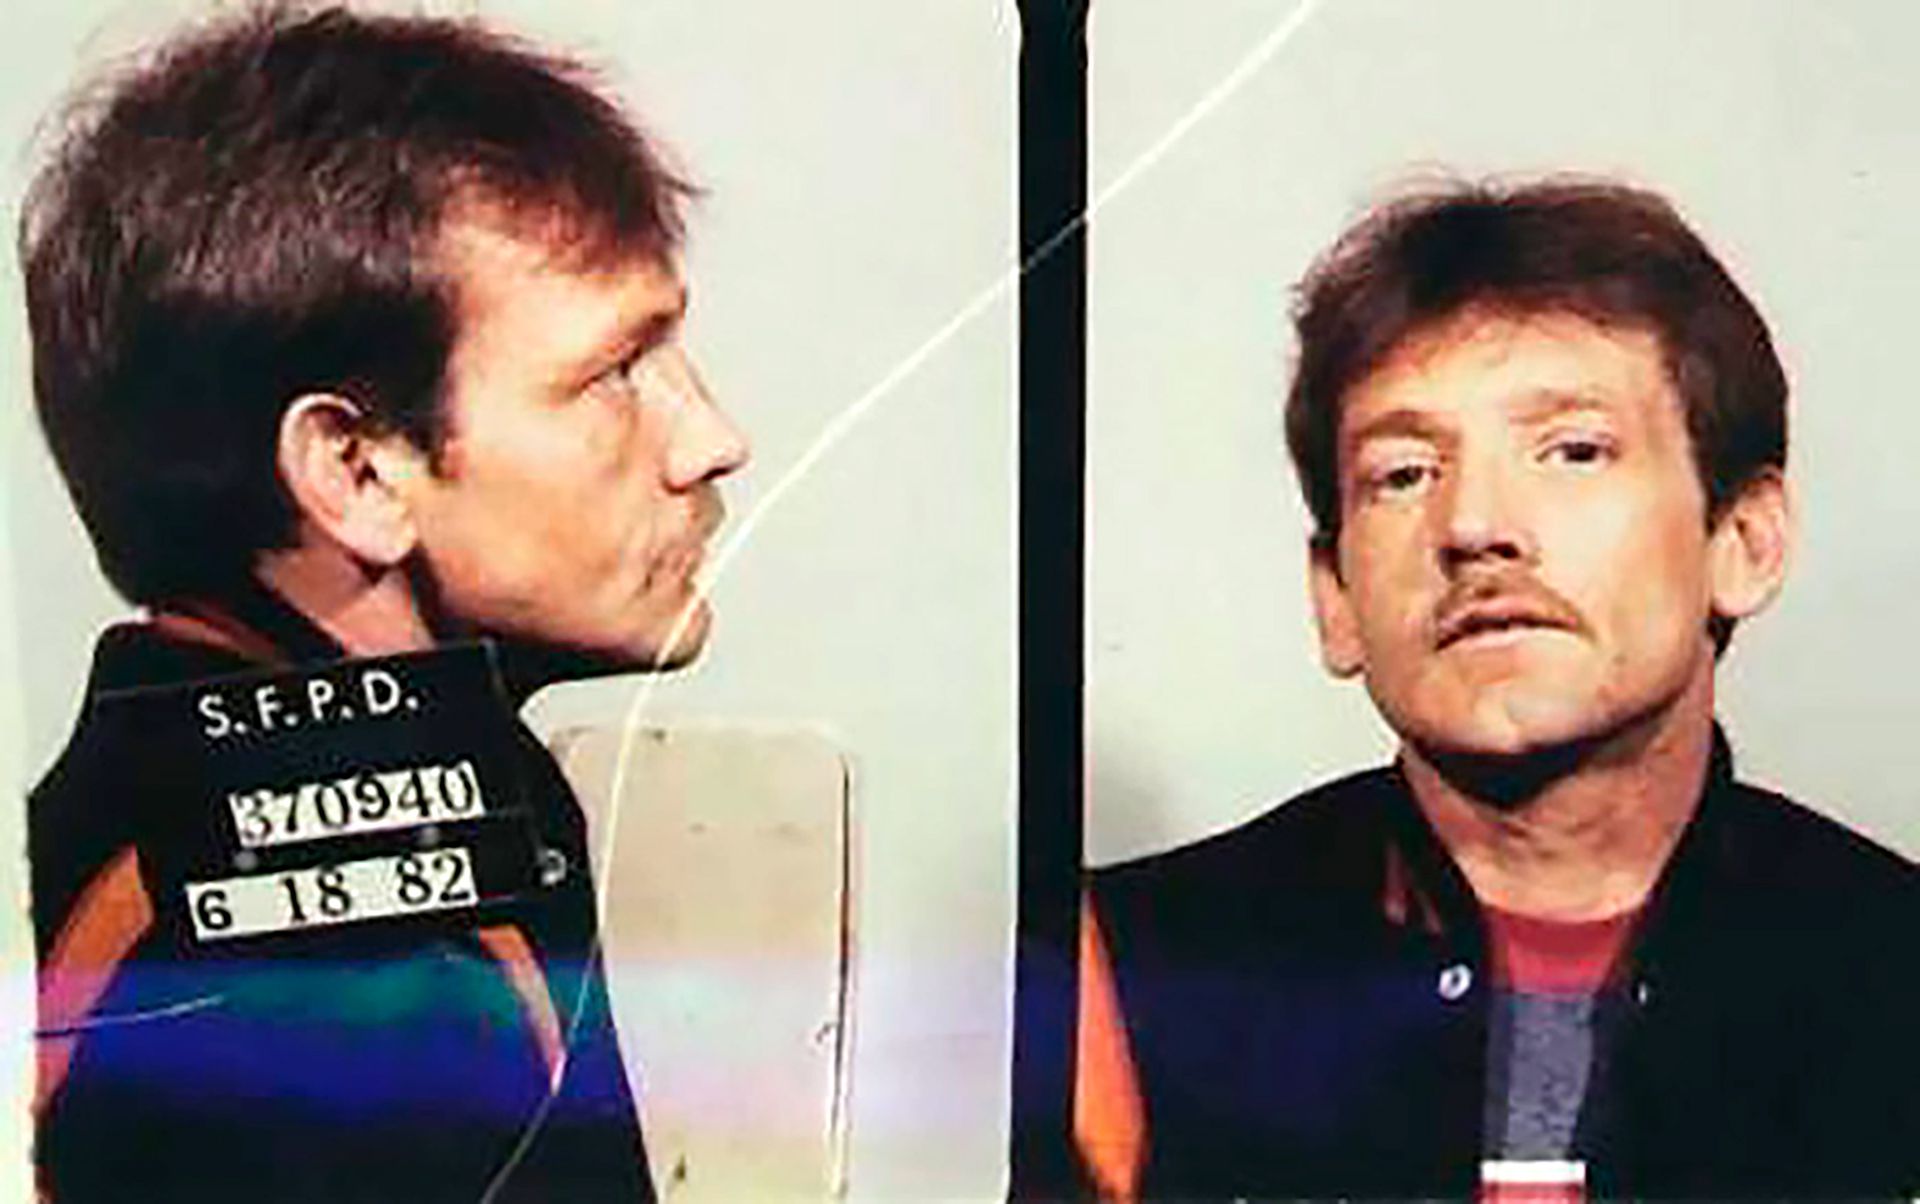 Wayne Jackson, principal sospechoso de haber secuestrado y asesinado a Kevin Collins el 10 febrero de 1984 en San Francisco (Departamento de Policía de San Francisco)